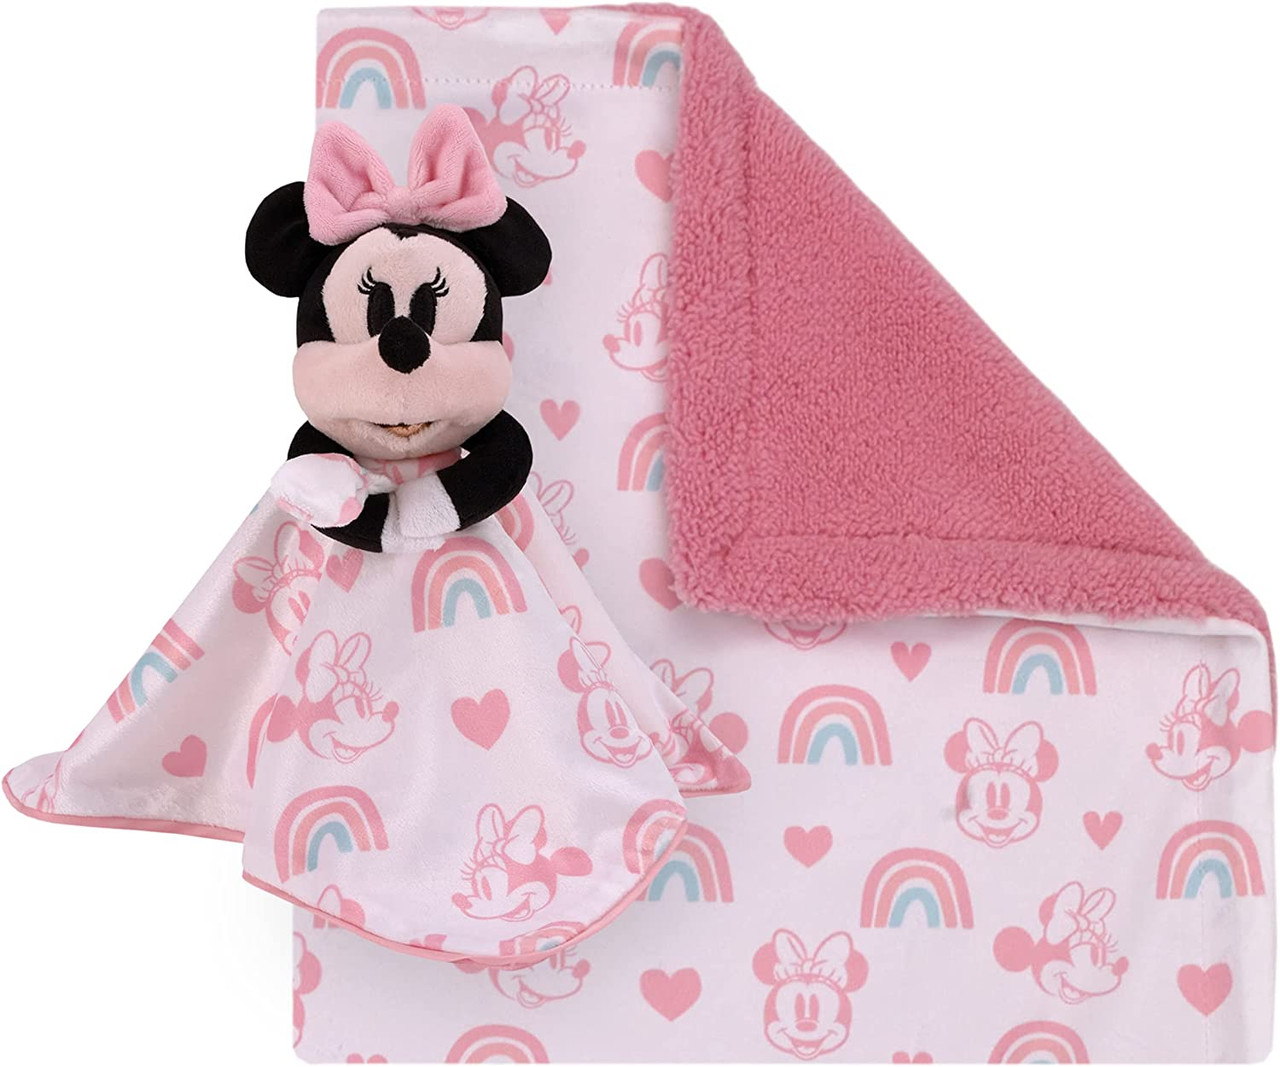 Surpyjama ludique en sherpa Minnie Disney pour enfant fille